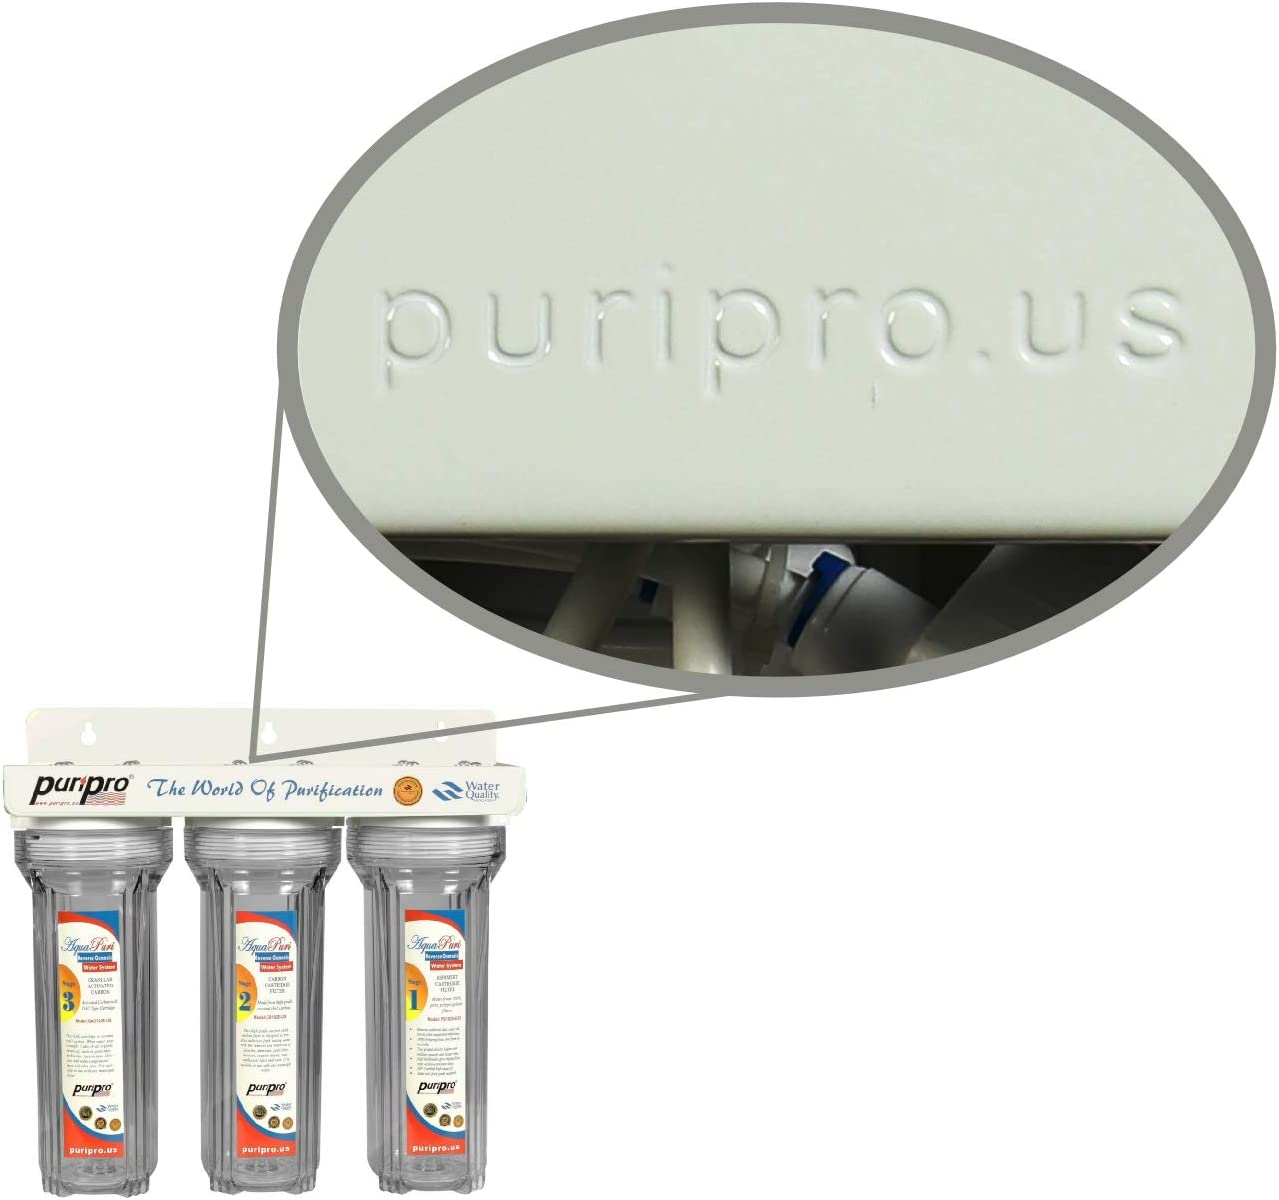 دستگاه تصفیه آب Puri Pro Drinking Water Filtration مدل 1121 - ارسال ۱۰ الی ۱۵ روز کاری